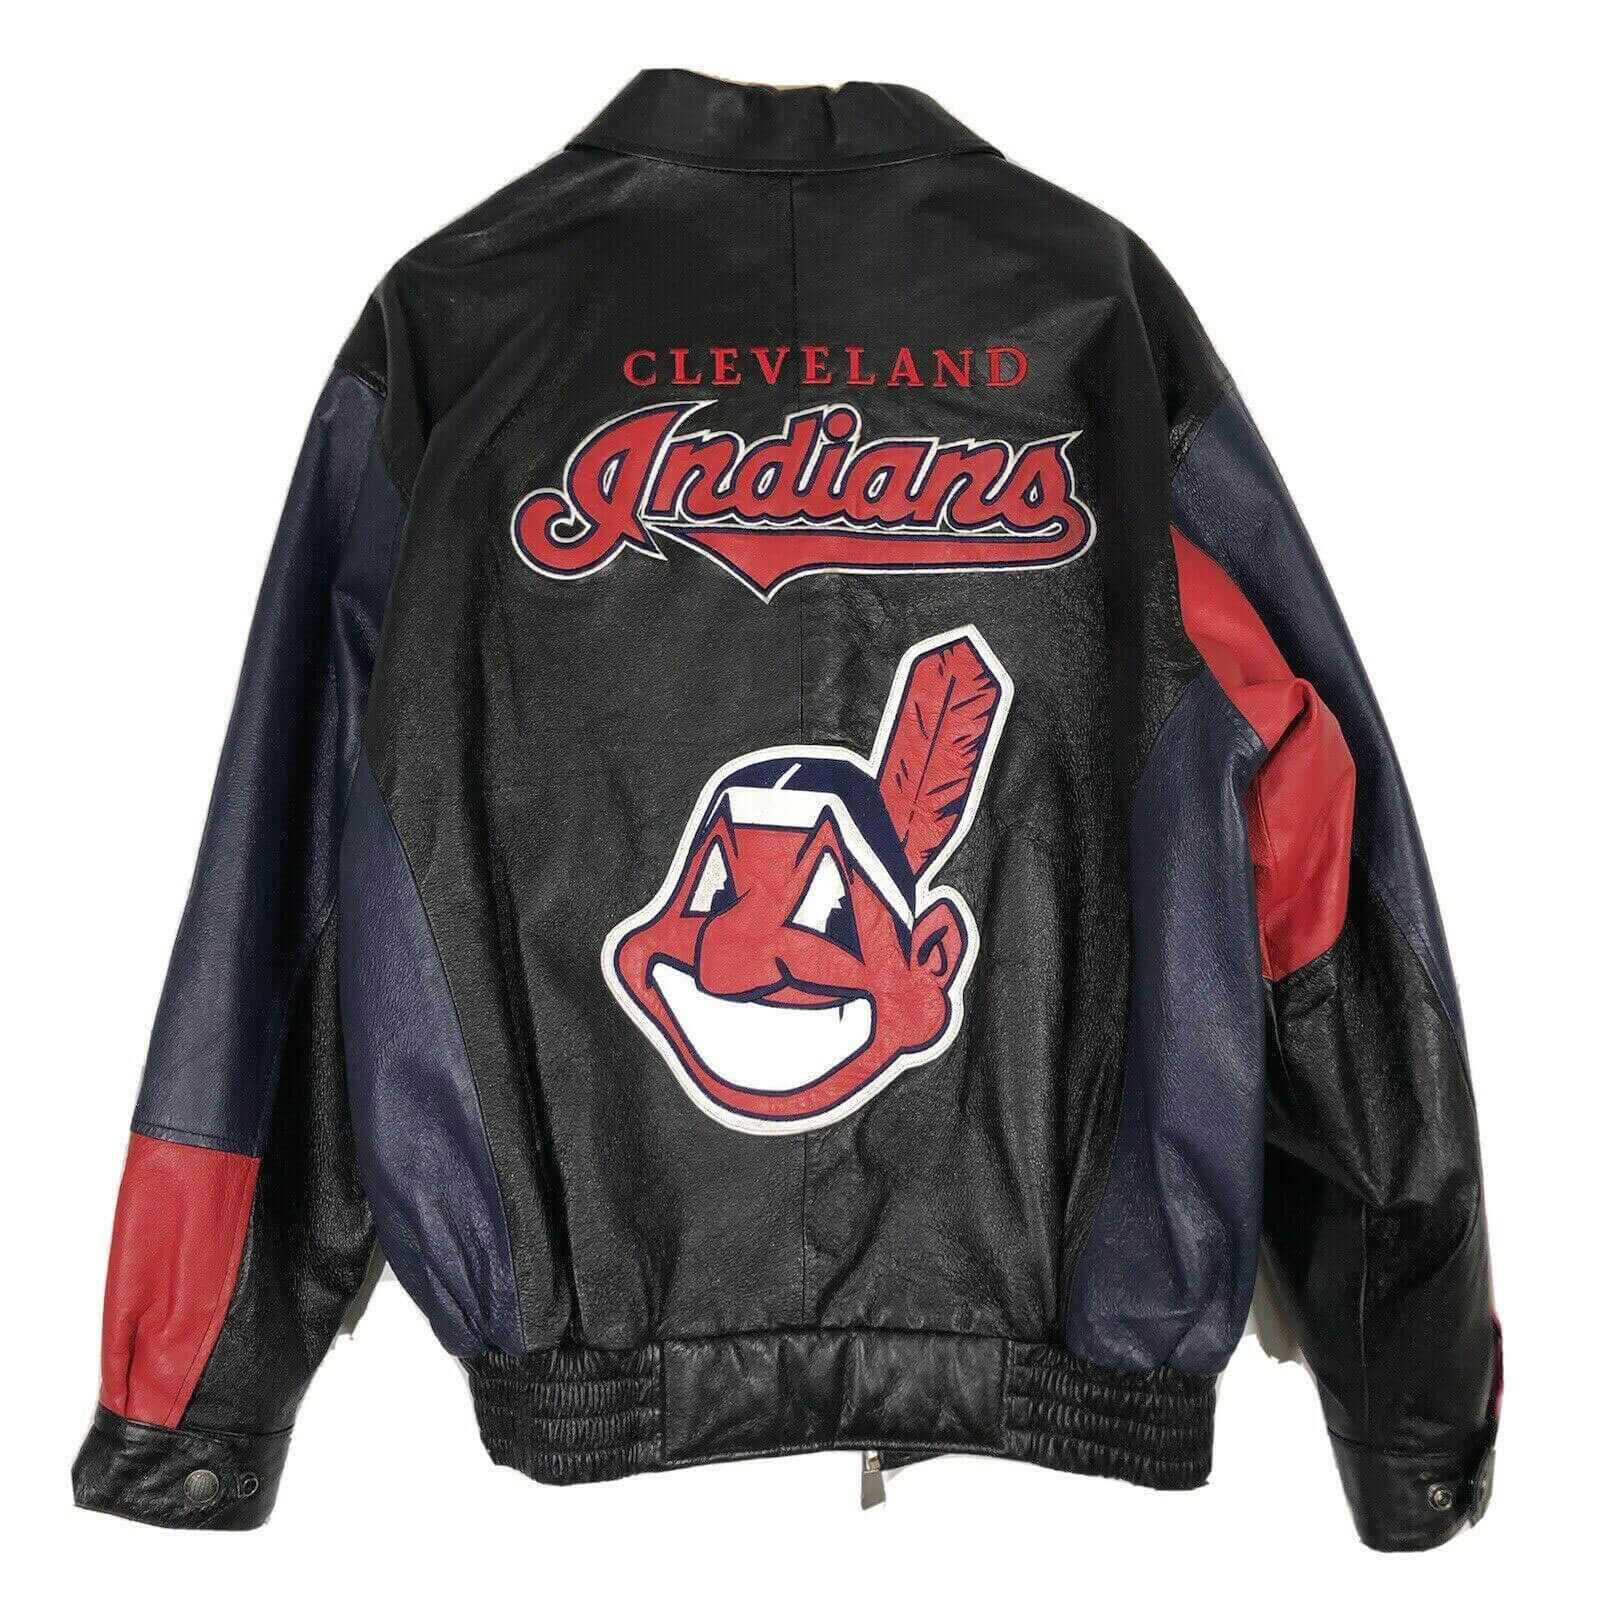 Maker of Jacket Black Leather Jackets Vintage MLB Cleveland Indians